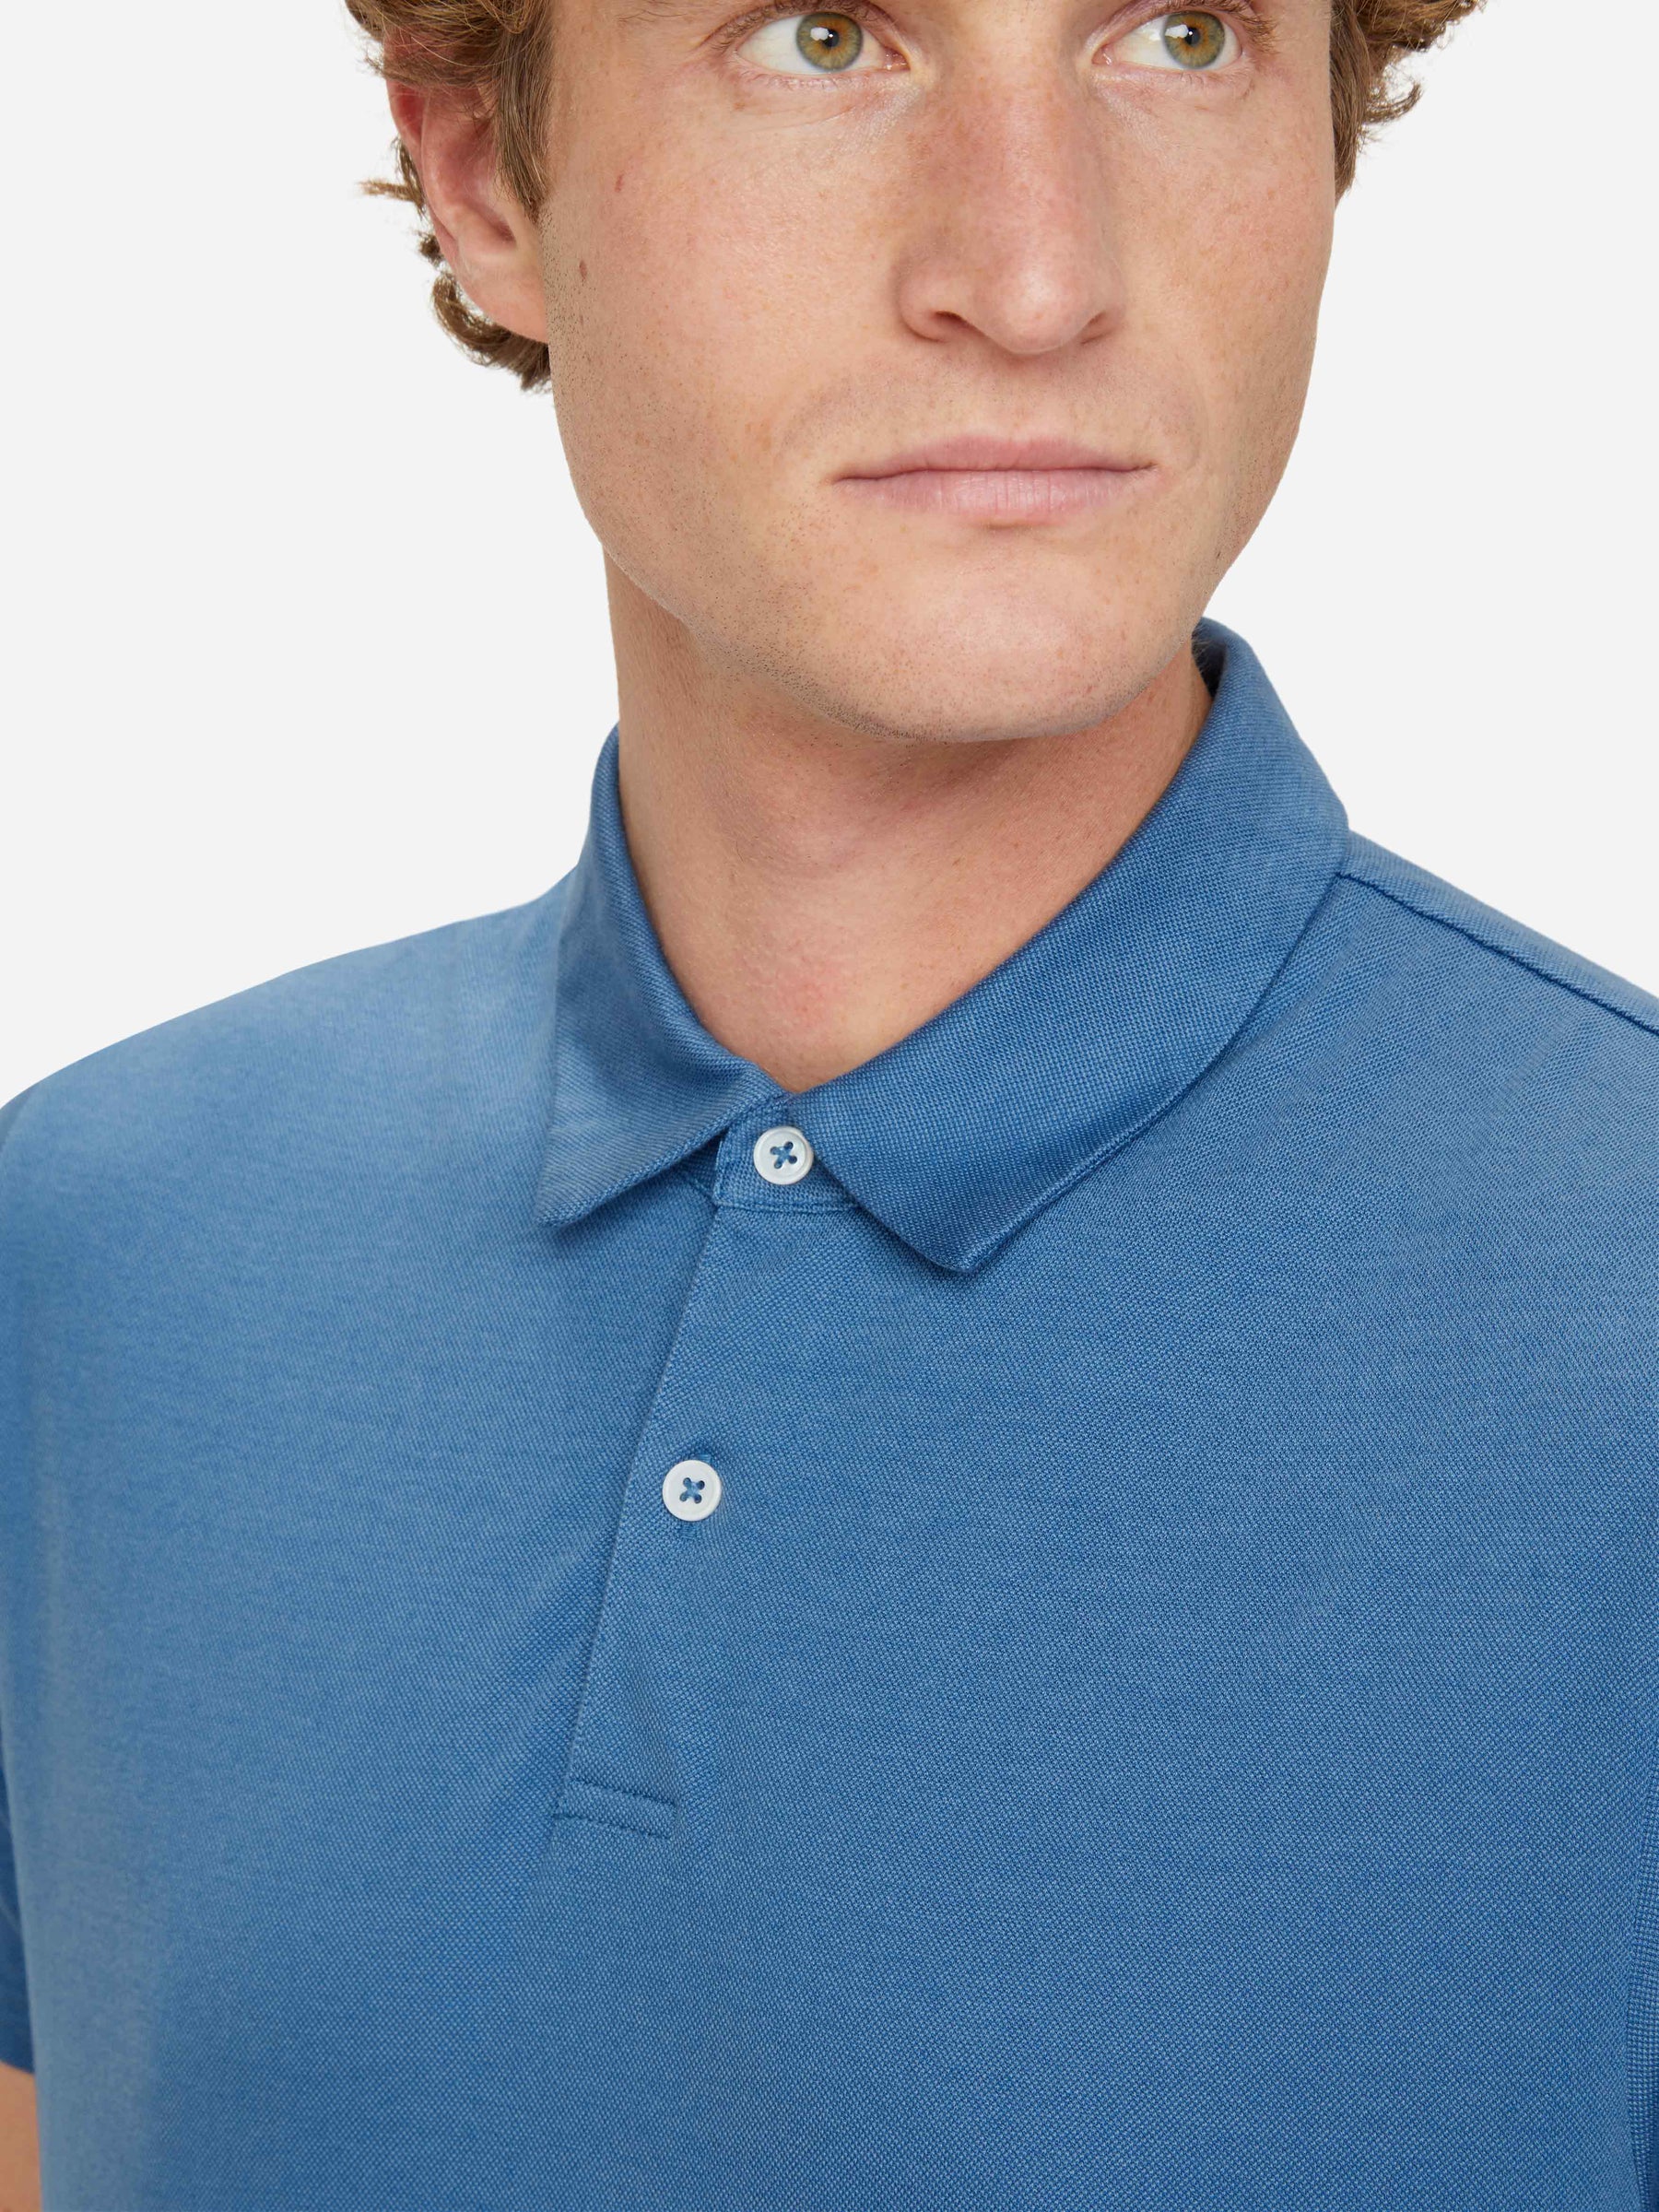 Men's Polo Shirt Ramsay 3 Pique Cotton Tencel Blue